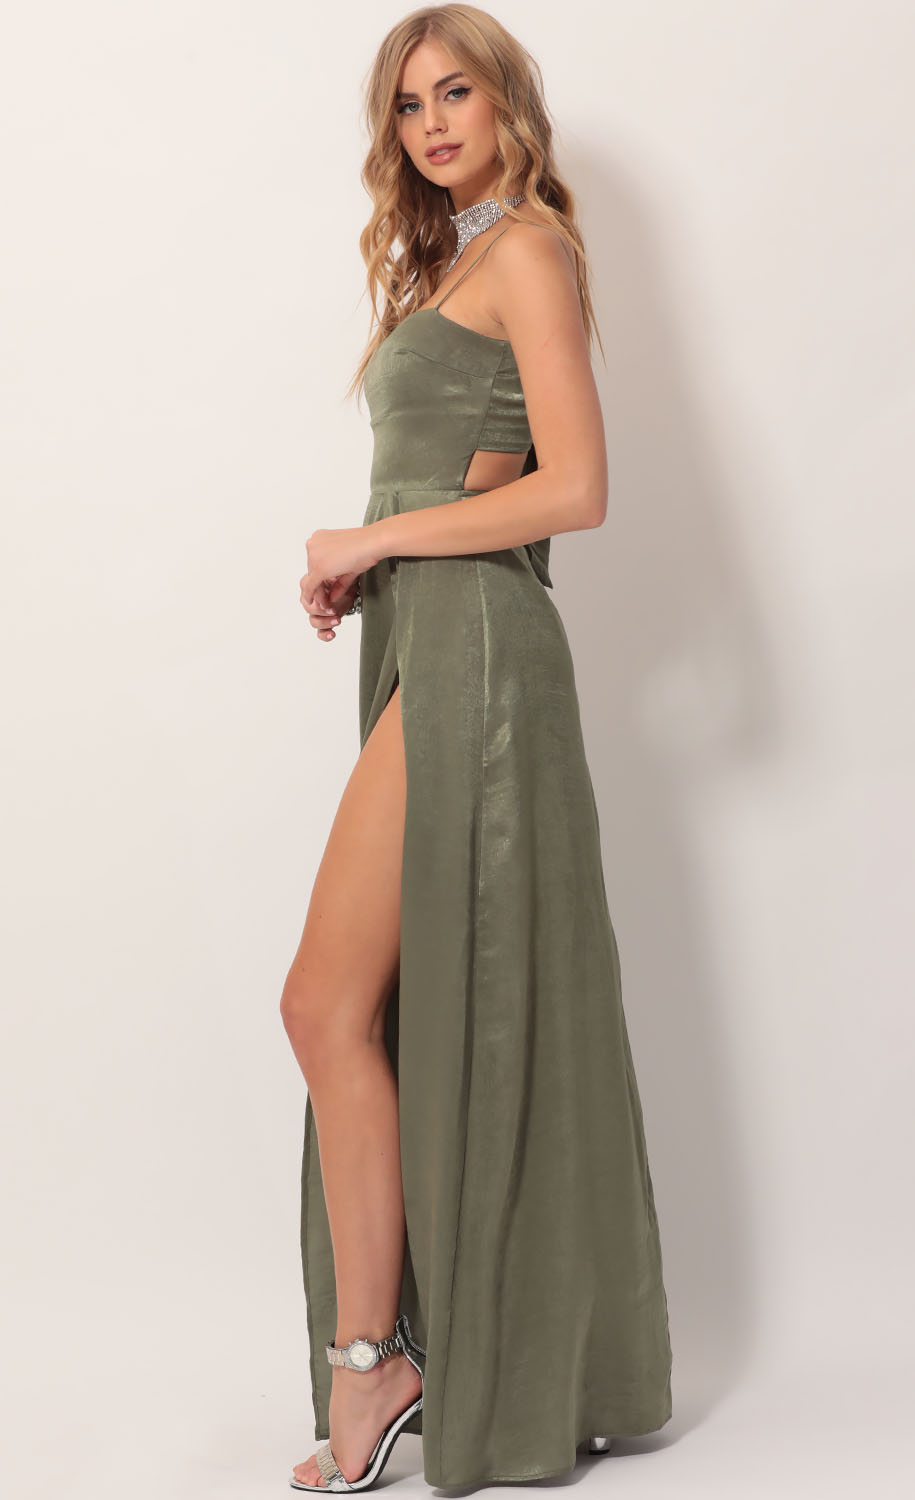 olive green long dress